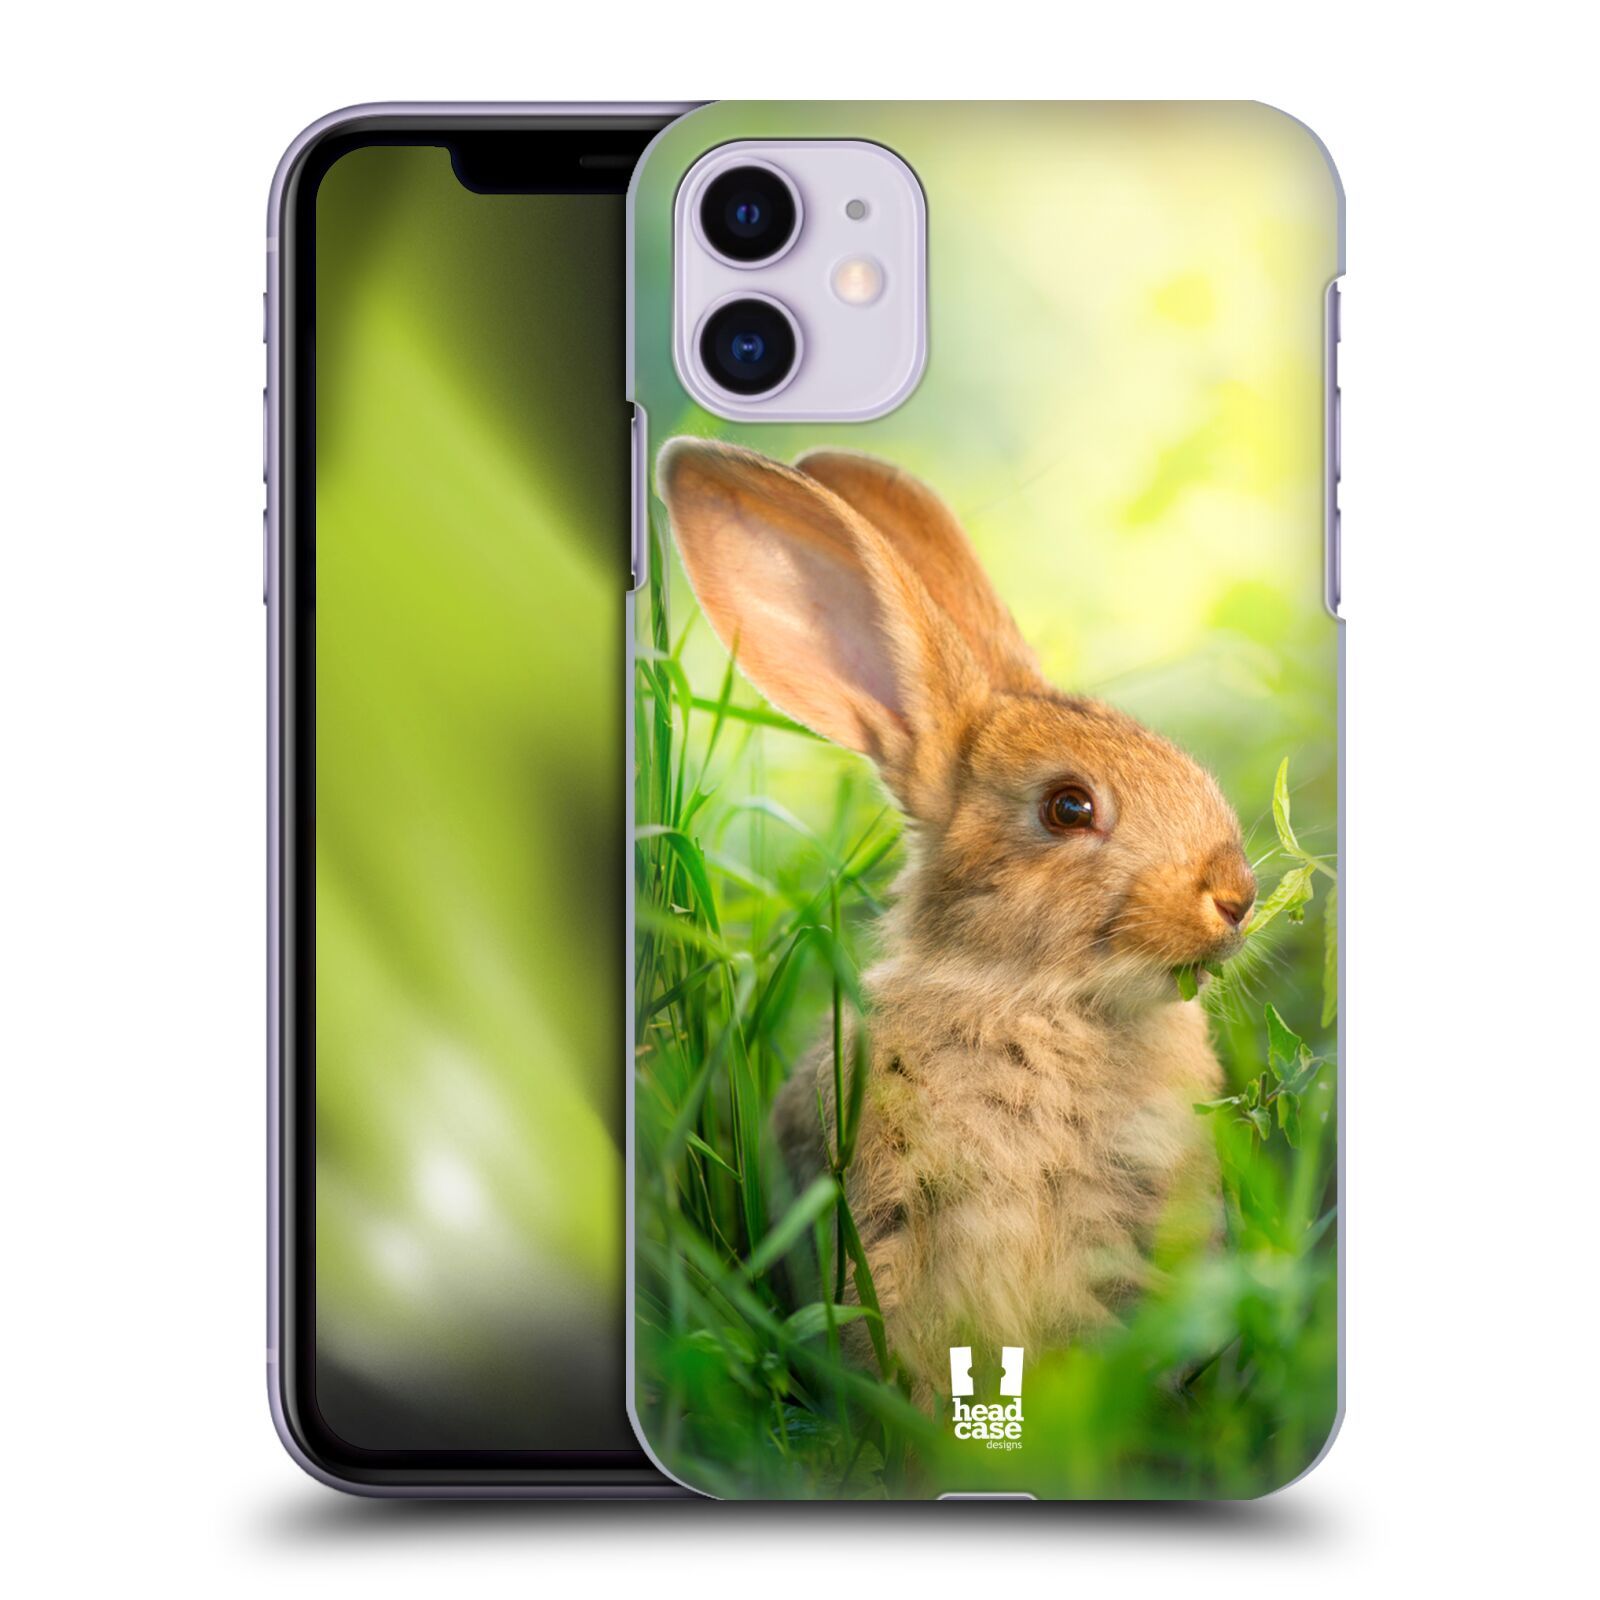 Pouzdro na mobil Apple Iphone 11 - HEAD CASE - vzor Divočina, Divoký život a zvířata foto ZAJÍČEK V TRÁVĚ ZELENÁ